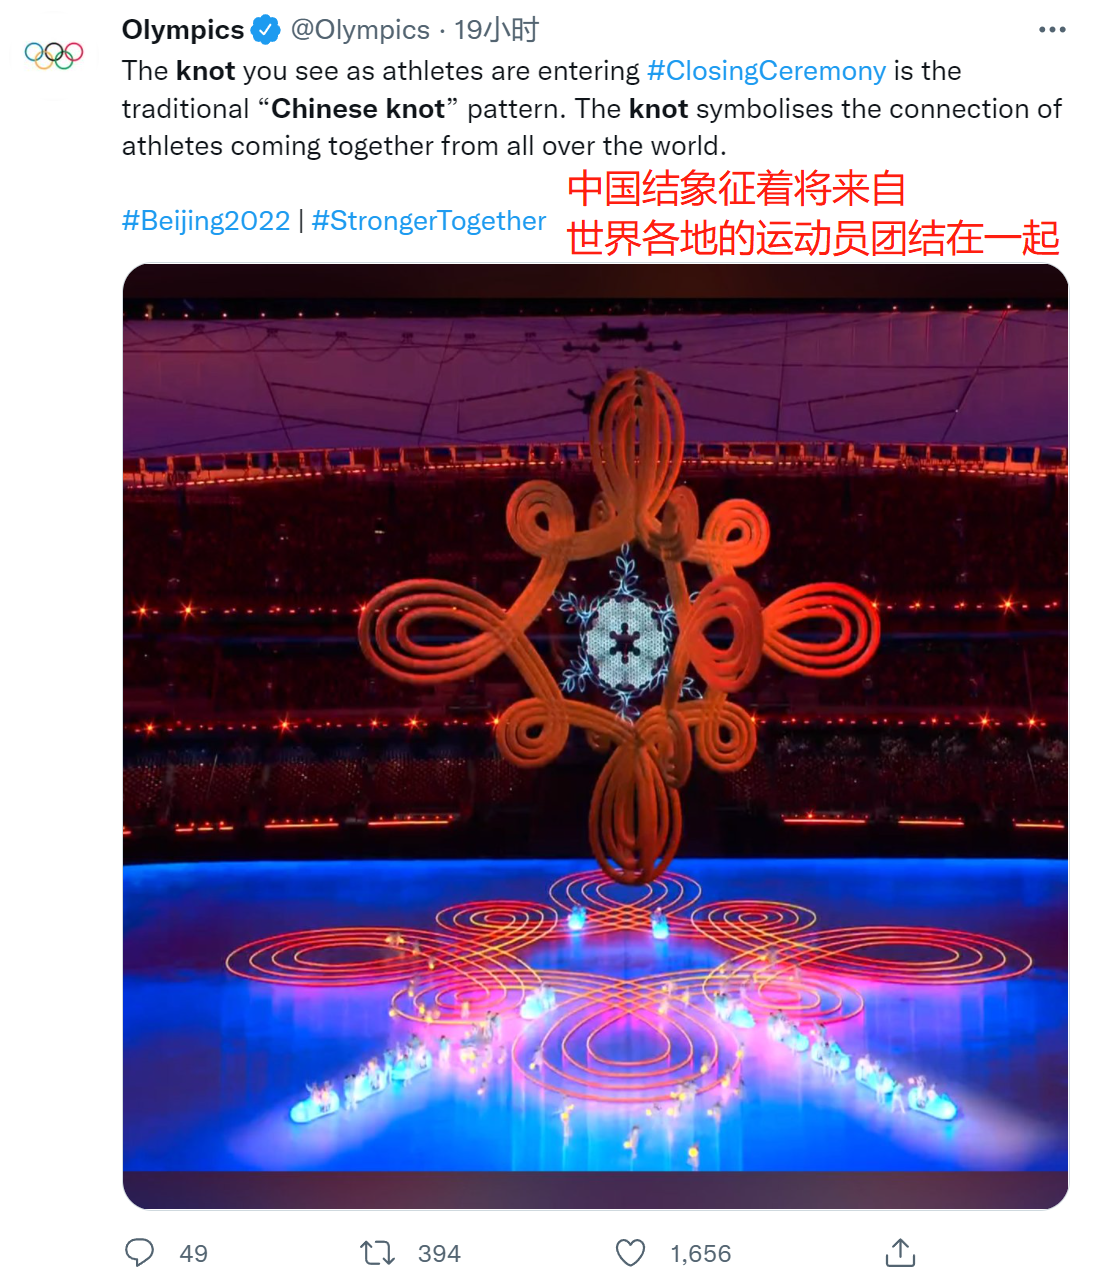 国际奥委会官方推特介绍中国结